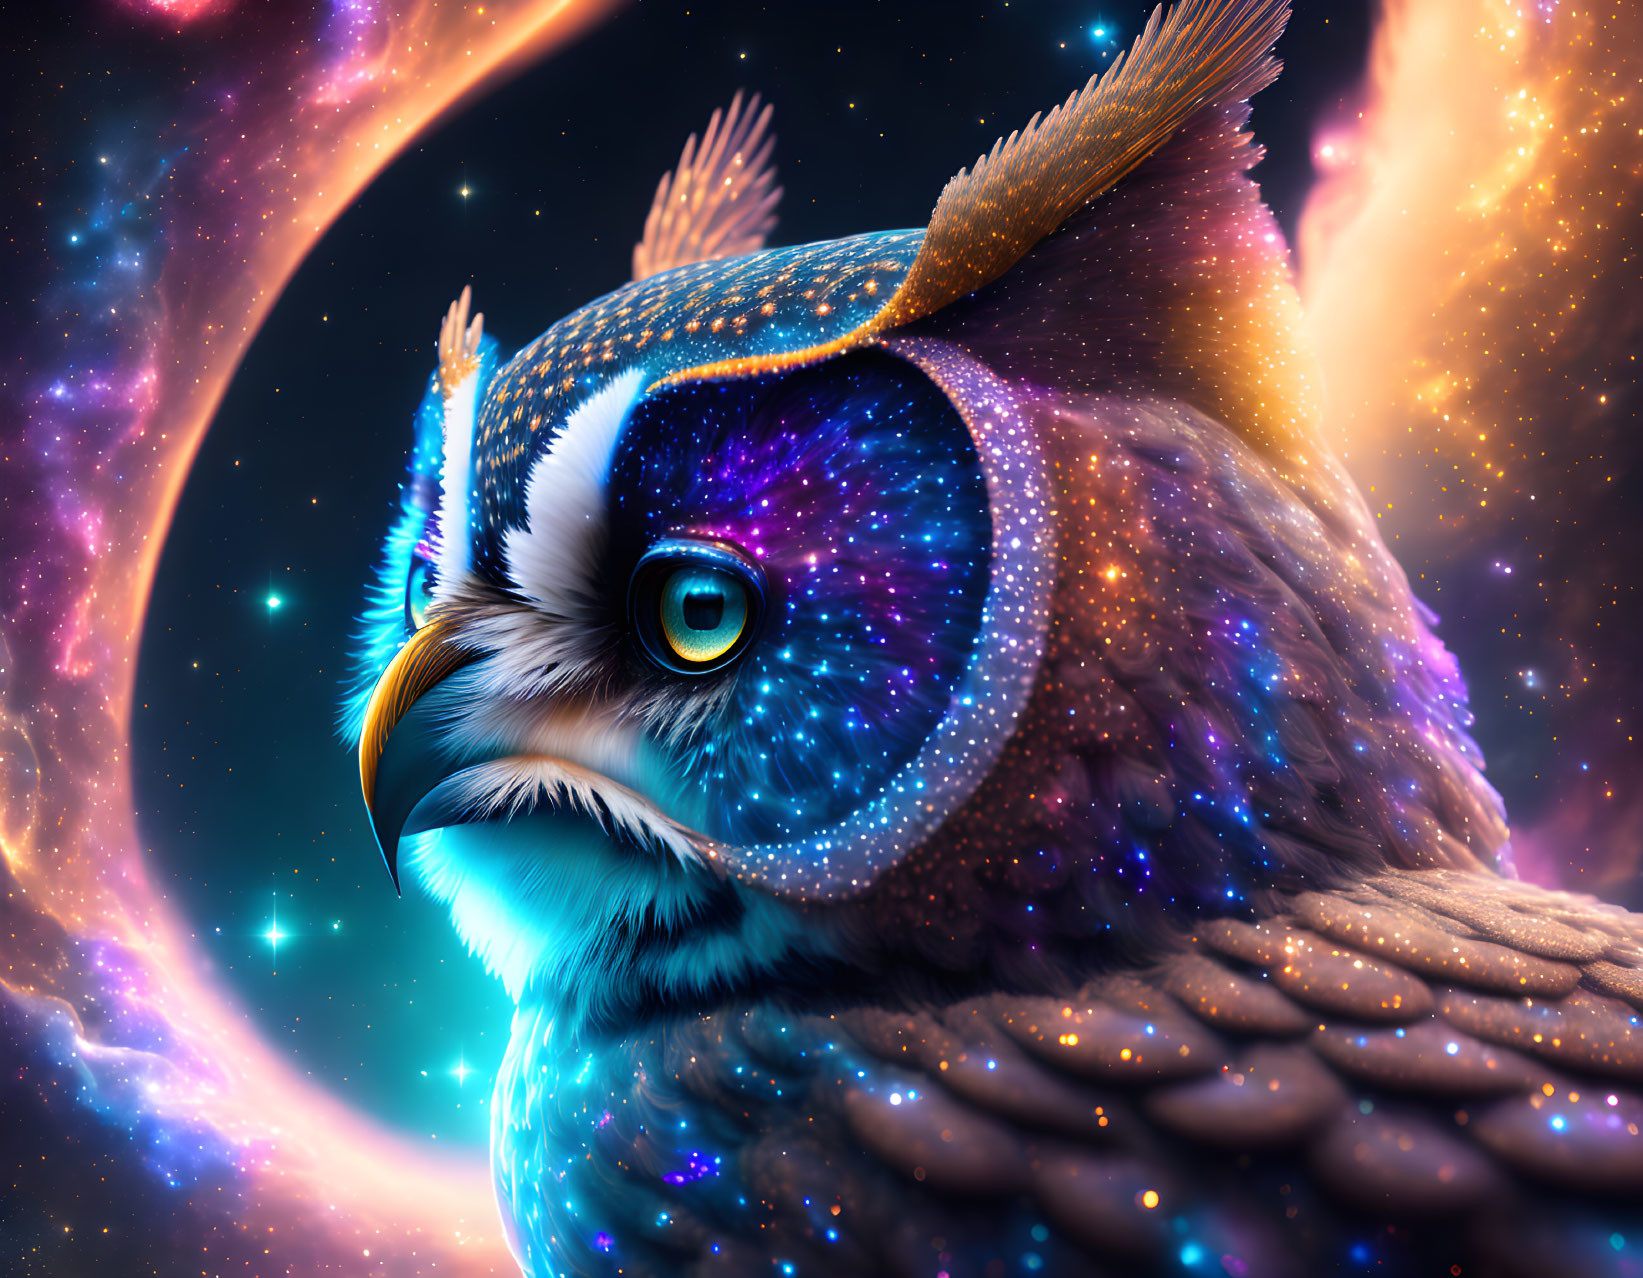 Owl Among the Stars